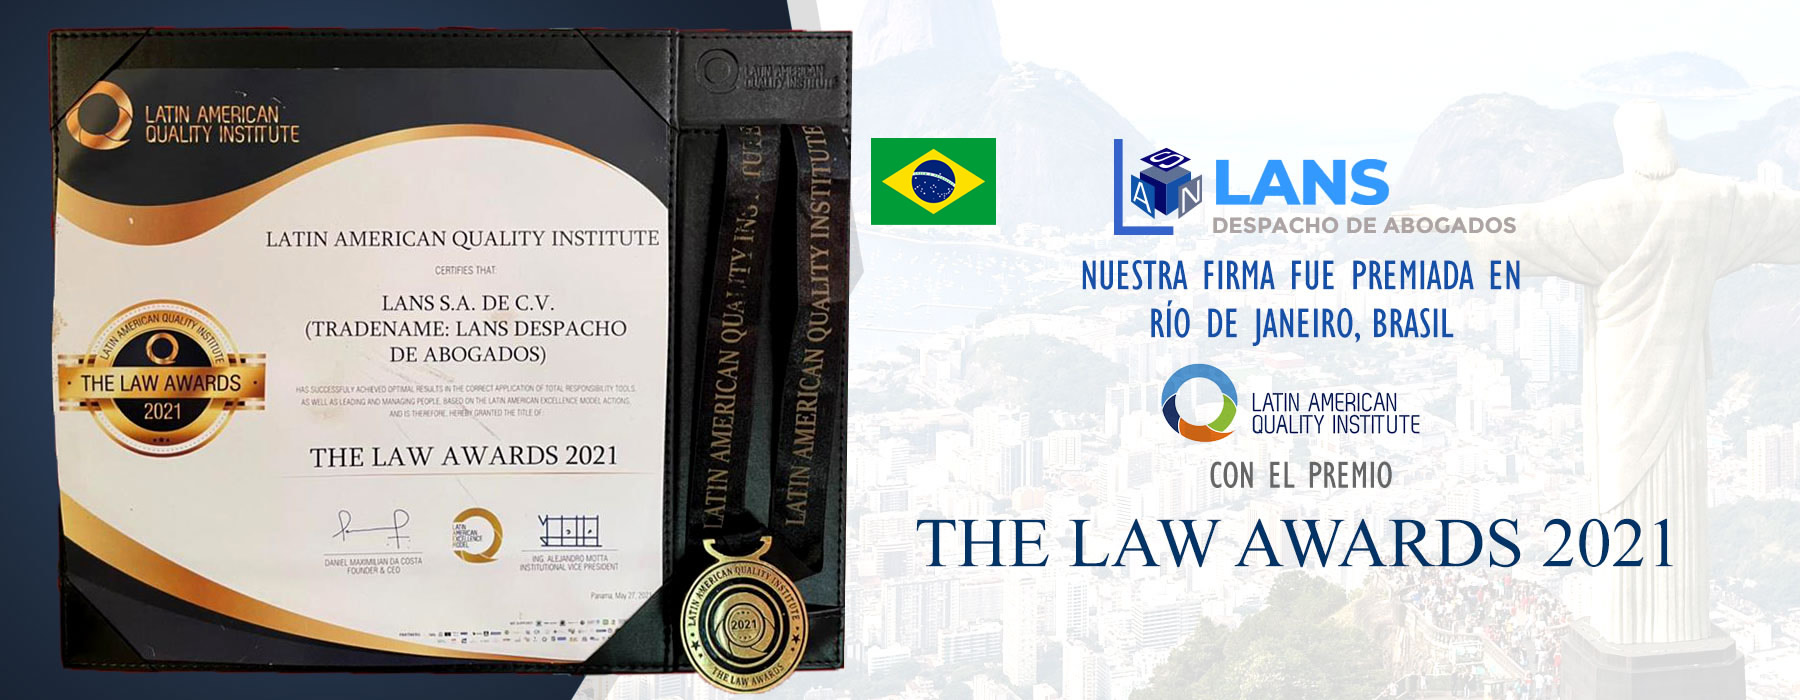 Premio del Latin American Quality Institute en 2021